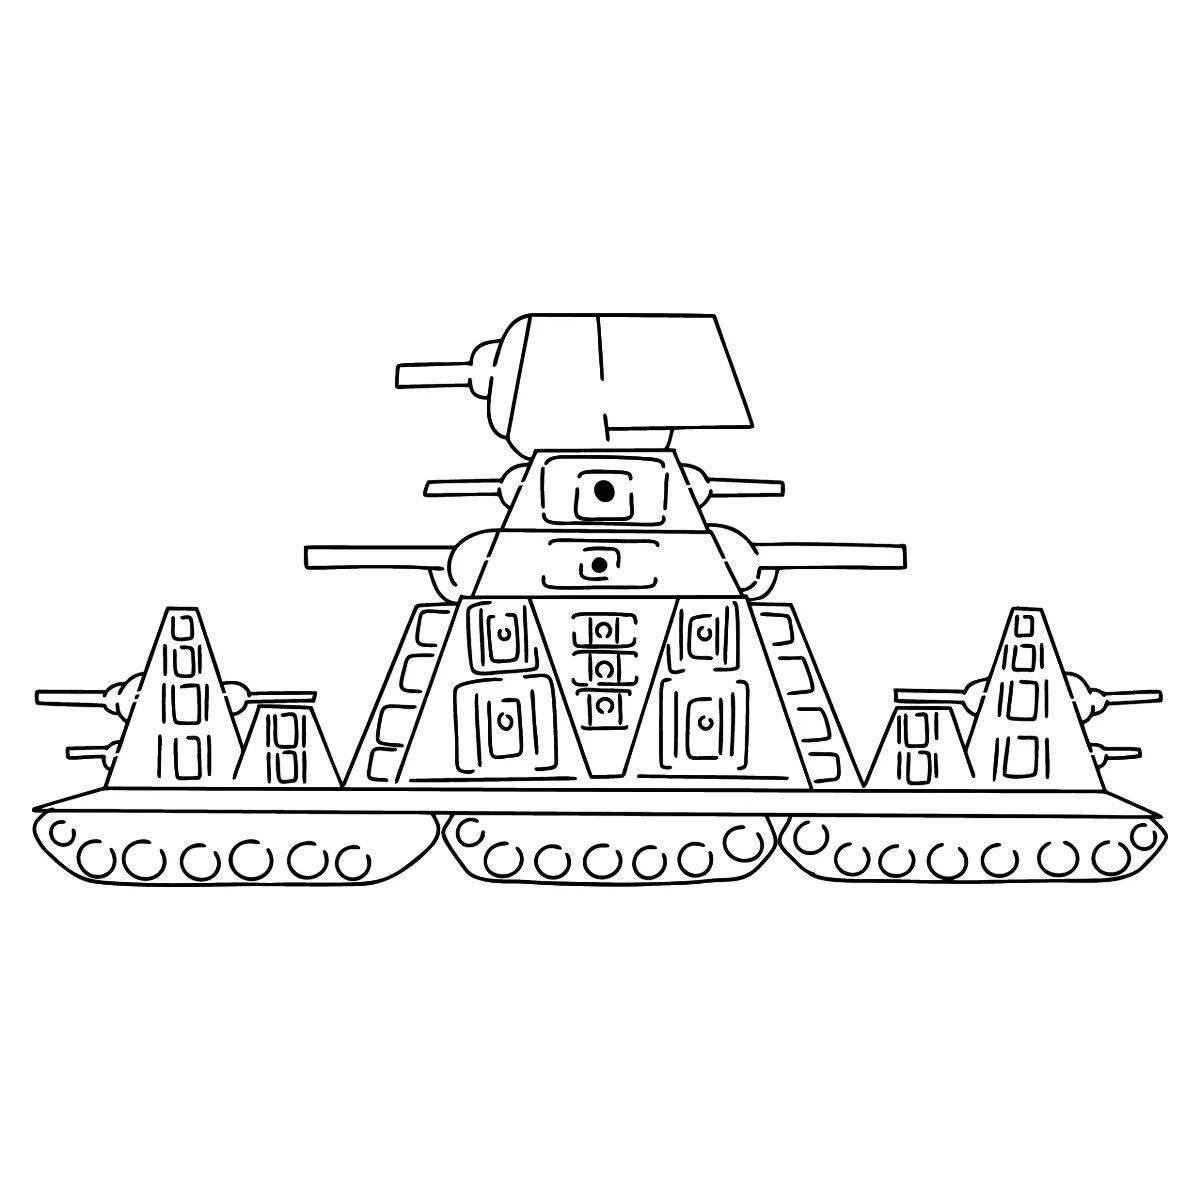 Интригующая раскраска танка кв44